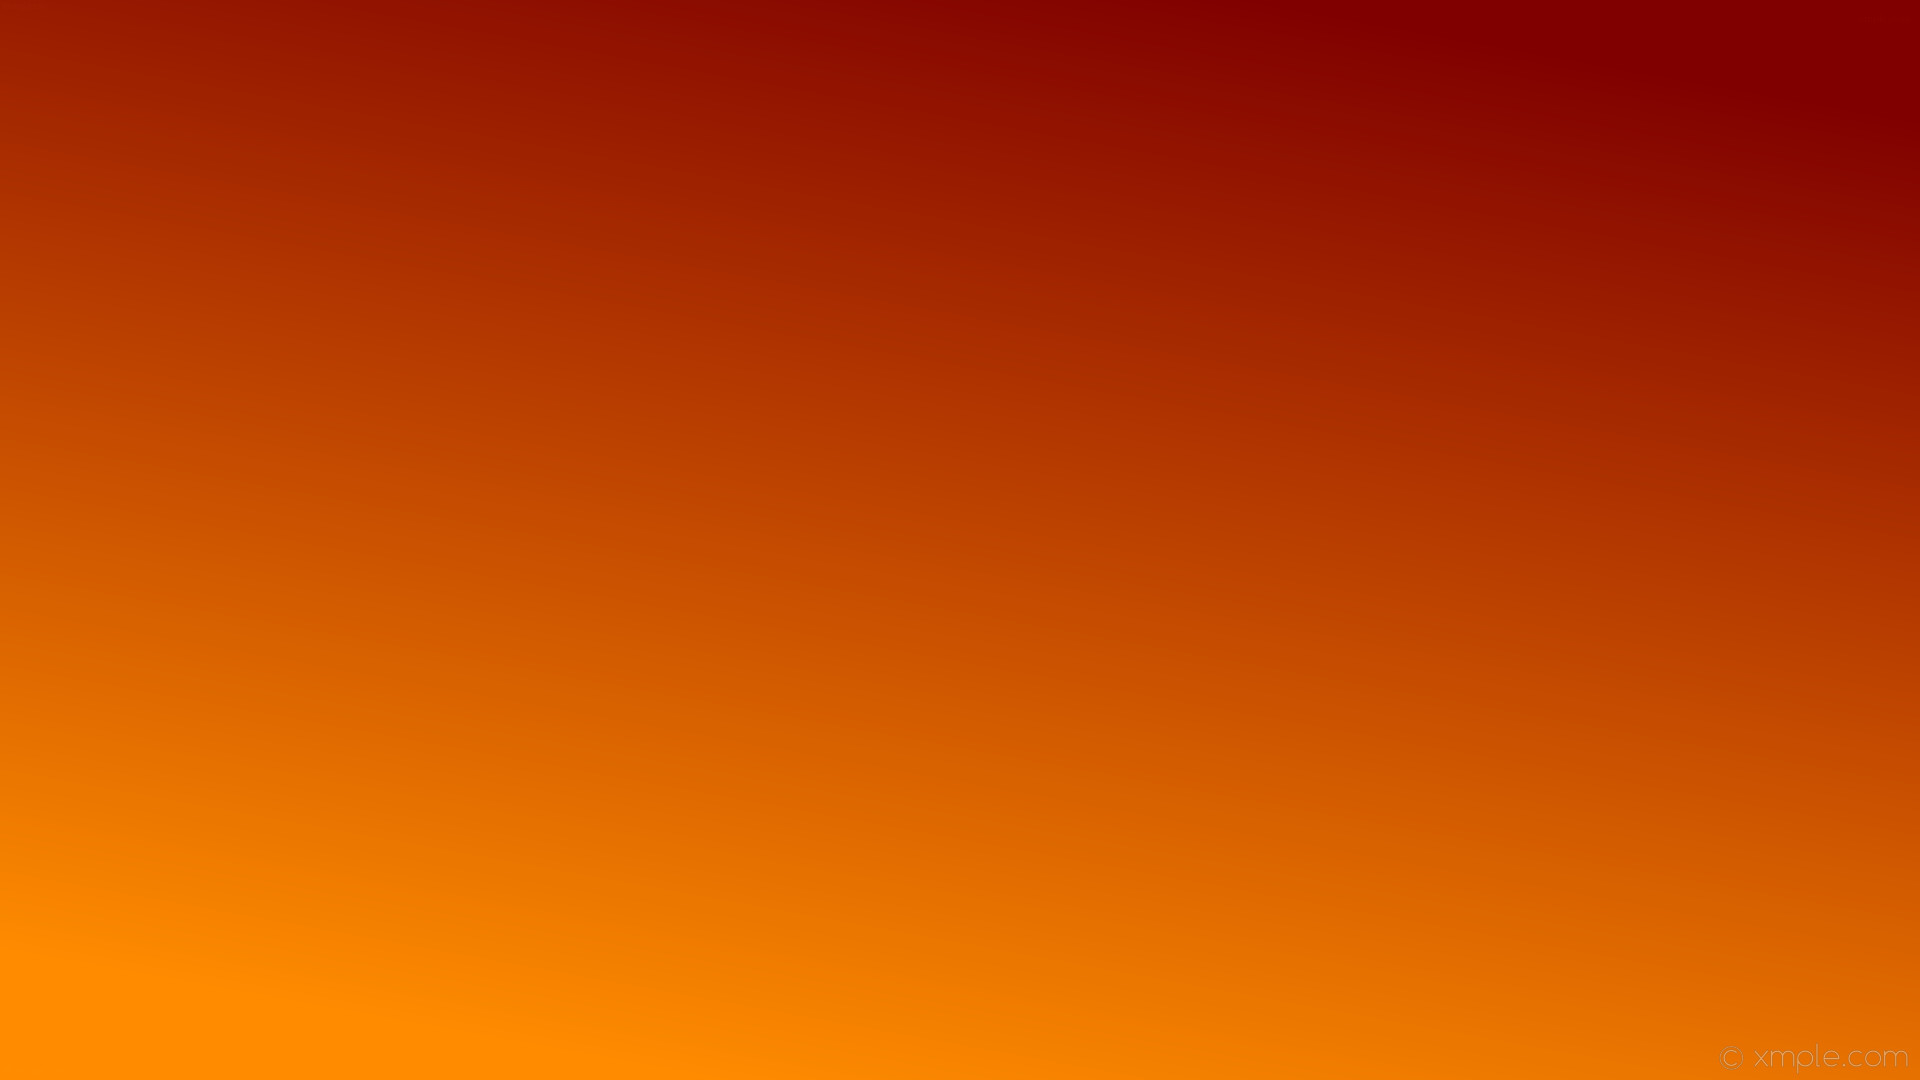 Hình nền chuyển từ màu nâu đến màu cam sậm #800000 sẽ mang lại cảm giác đầy táo bạo và cuốn hút cho màn hình của bạn. Với sự chuyển sang từ màu sắc ấm áp của nâu sang sự bắt mắt và quyến rũ của cam sậm, bạn không thể không yêu thích màn hình của mình hơn.